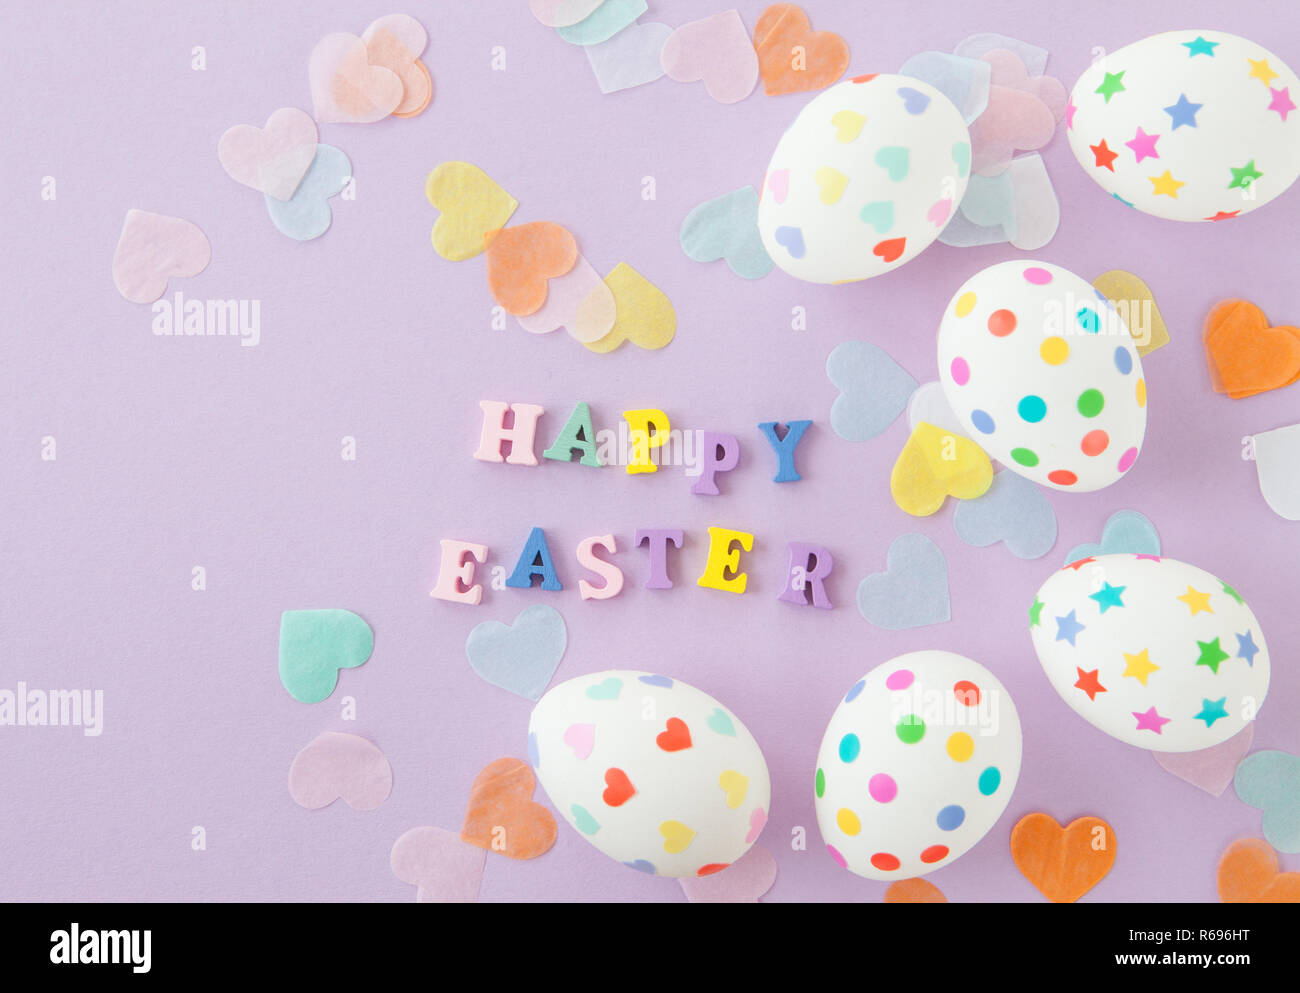 Happy Easter Stock Photo